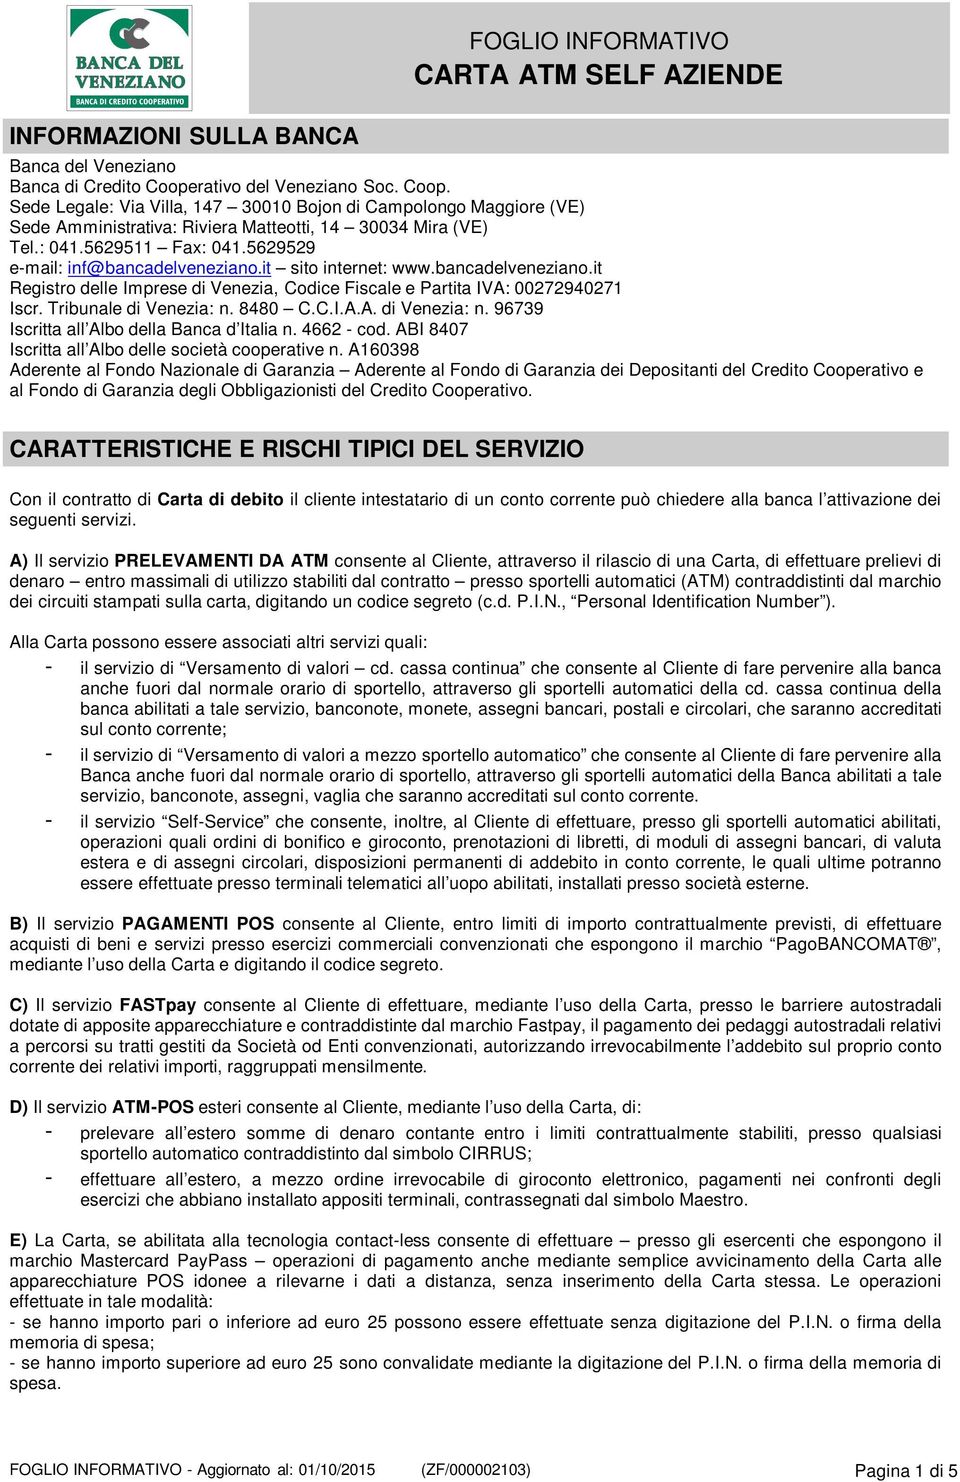 5629529 e-mail: inf@bancadelveneziano.it sito internet: www.bancadelveneziano.it Registro delle Imprese di Venezia, Codice Fiscale e Partita IVA: 00272940271 Iscr. Tribunale di Venezia: n.